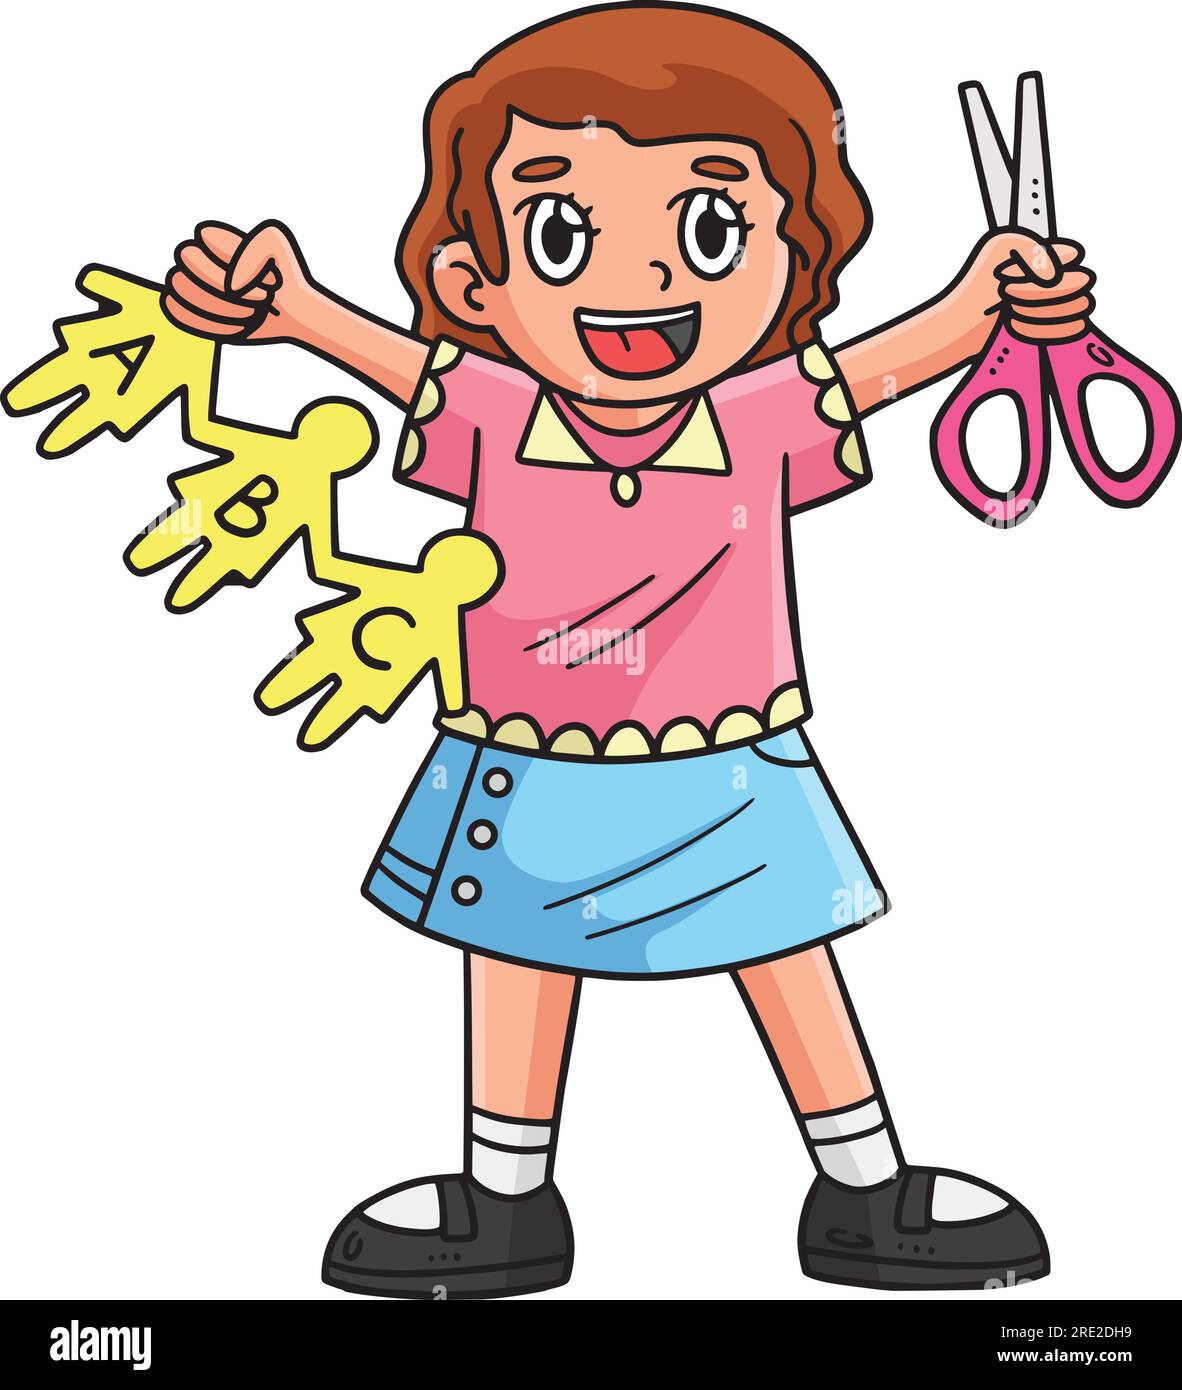 Enfant avec ciseaux Cartoon Coloried Clipart Image Vectorielle Stock - Alamy